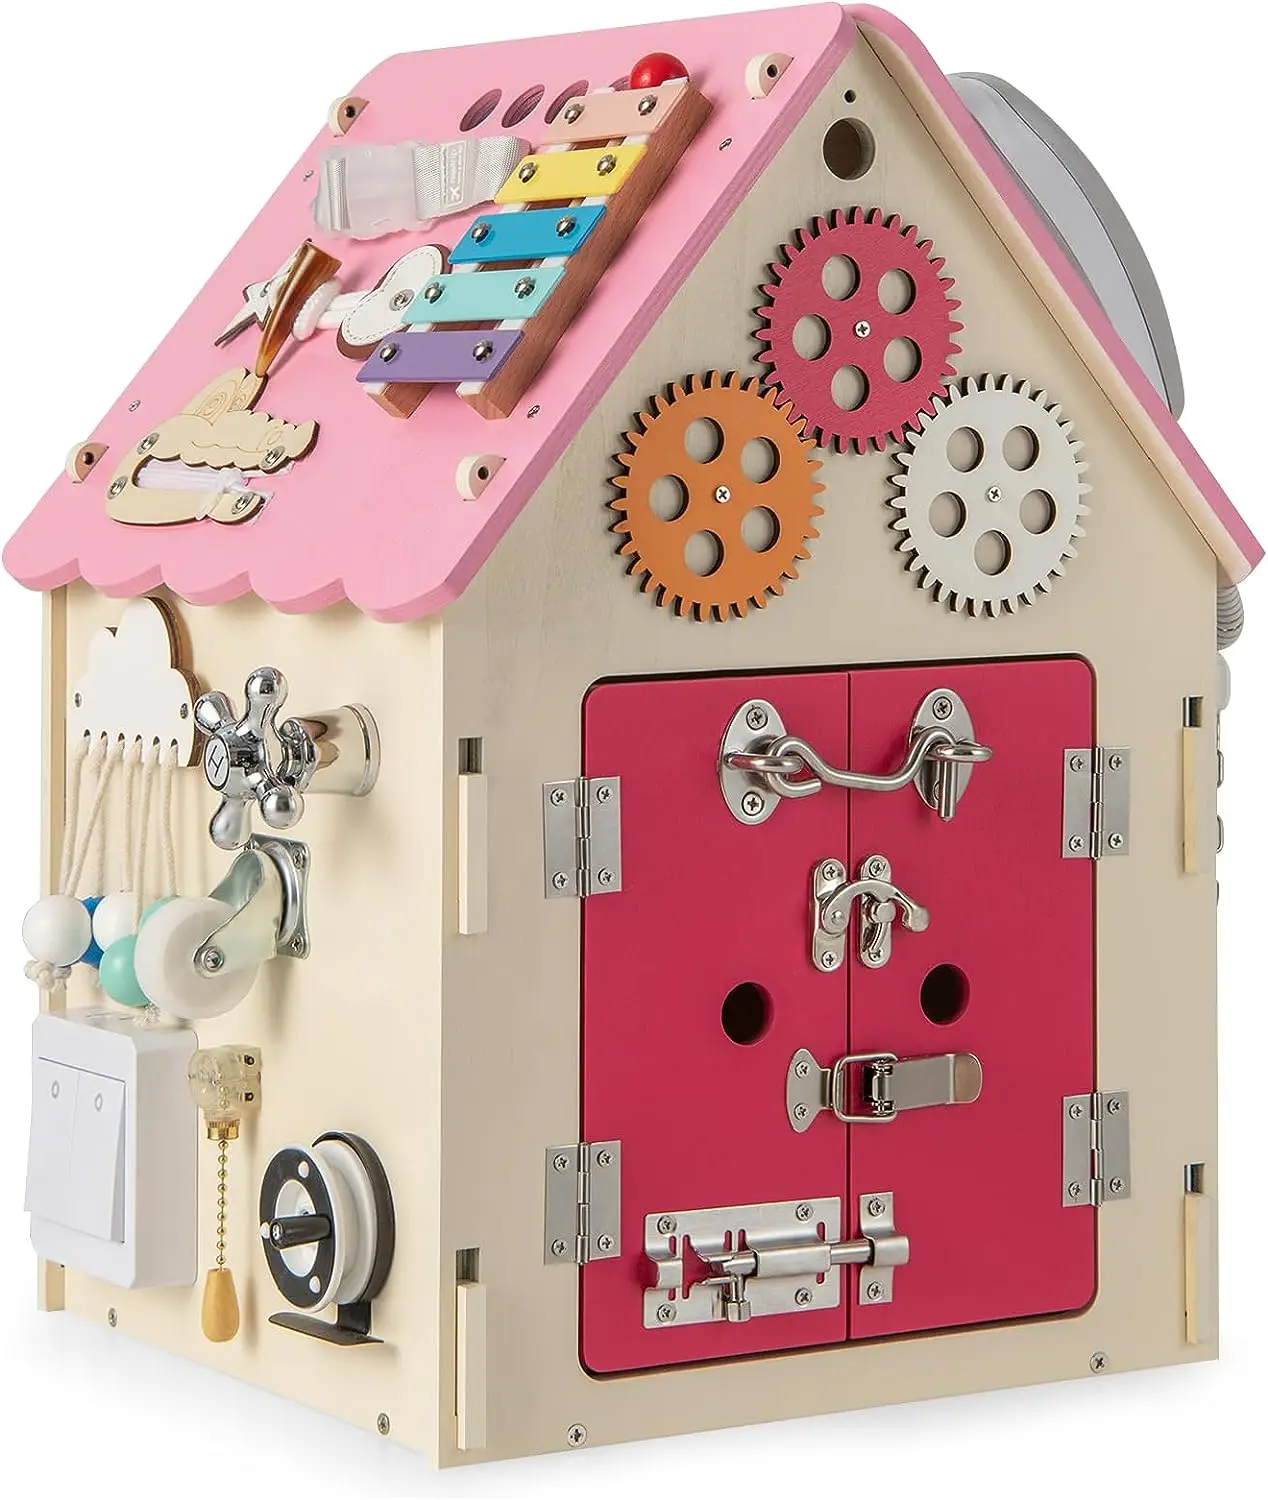 TM10032 Spielzeughaus